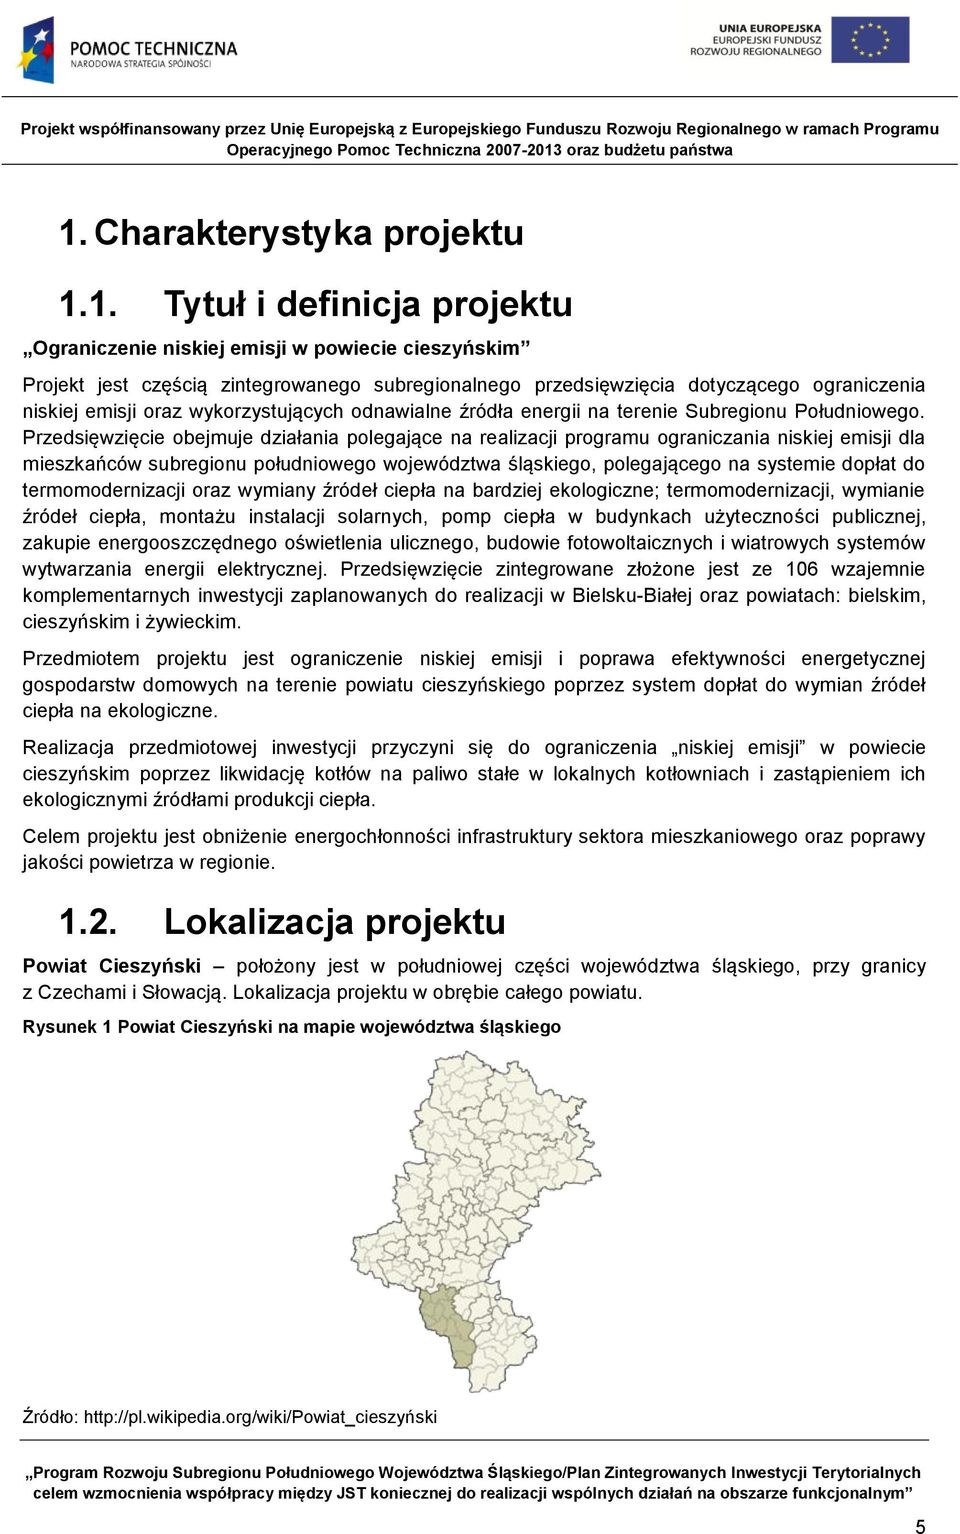 Przedsięwzięcie obejmuje działania polegające na realizacji programu ograniczania niskiej emisji dla mieszkańców subregionu południowego województwa śląskiego, polegającego na systemie dopłat do